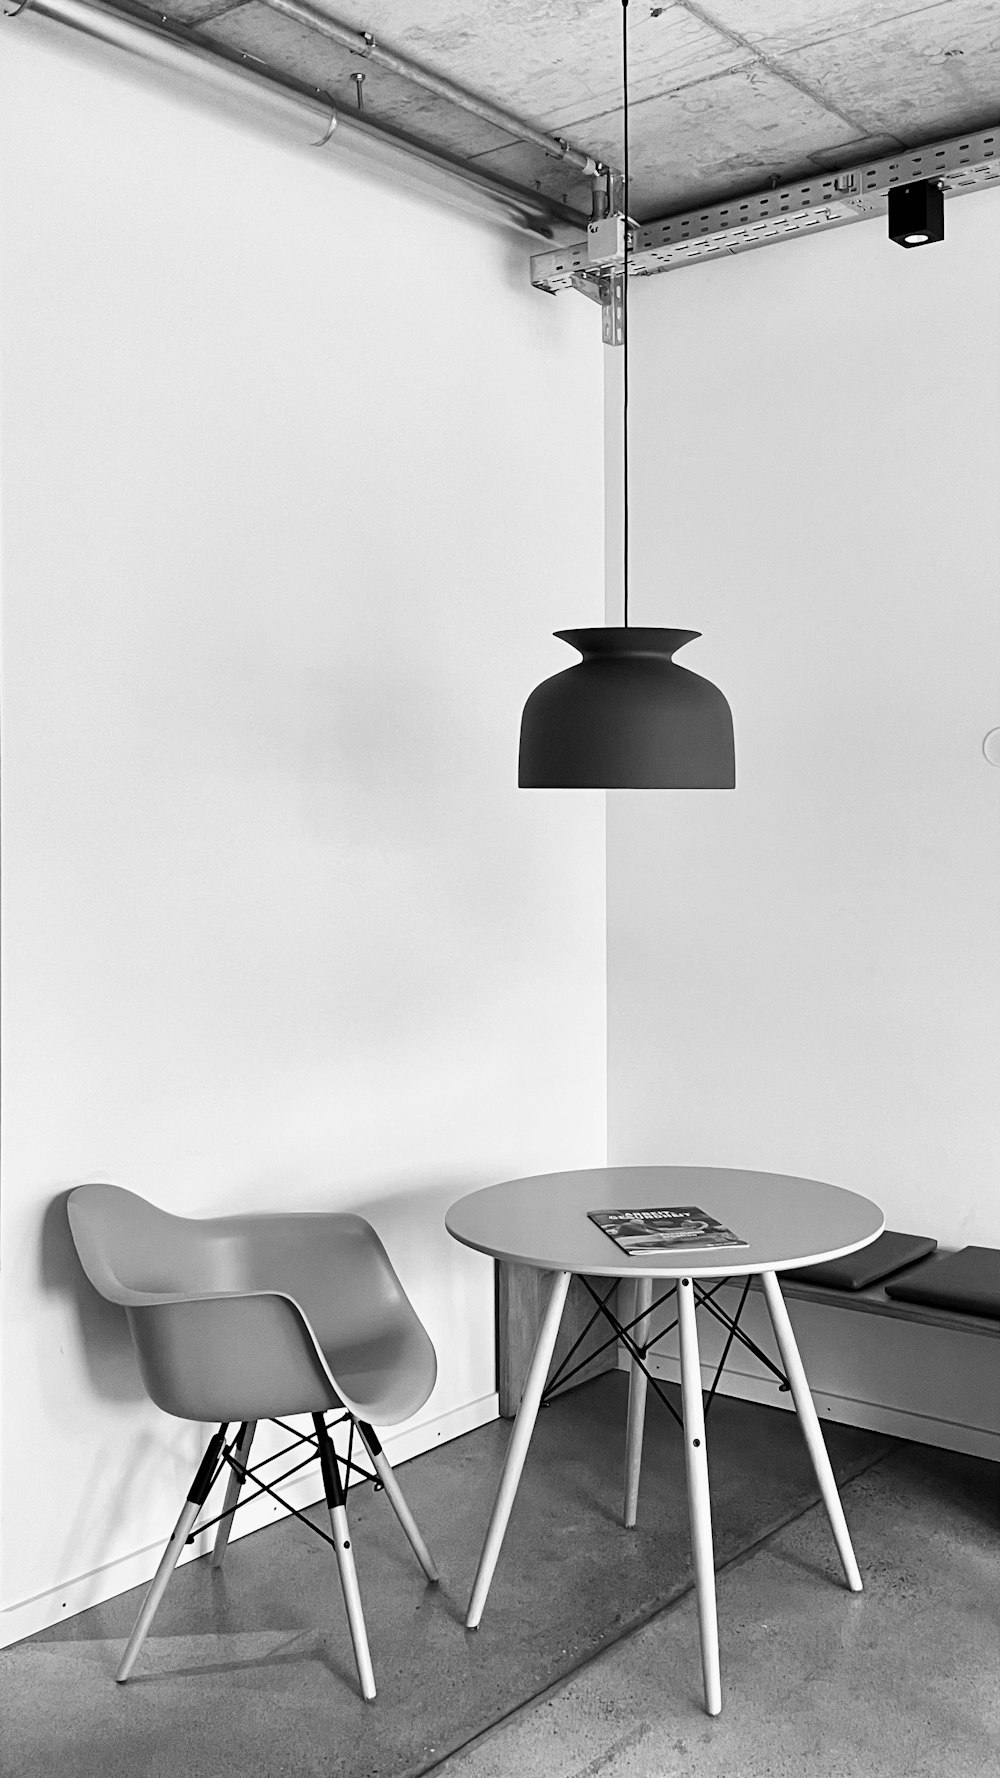 2つの椅子とテーブルの白黒写真